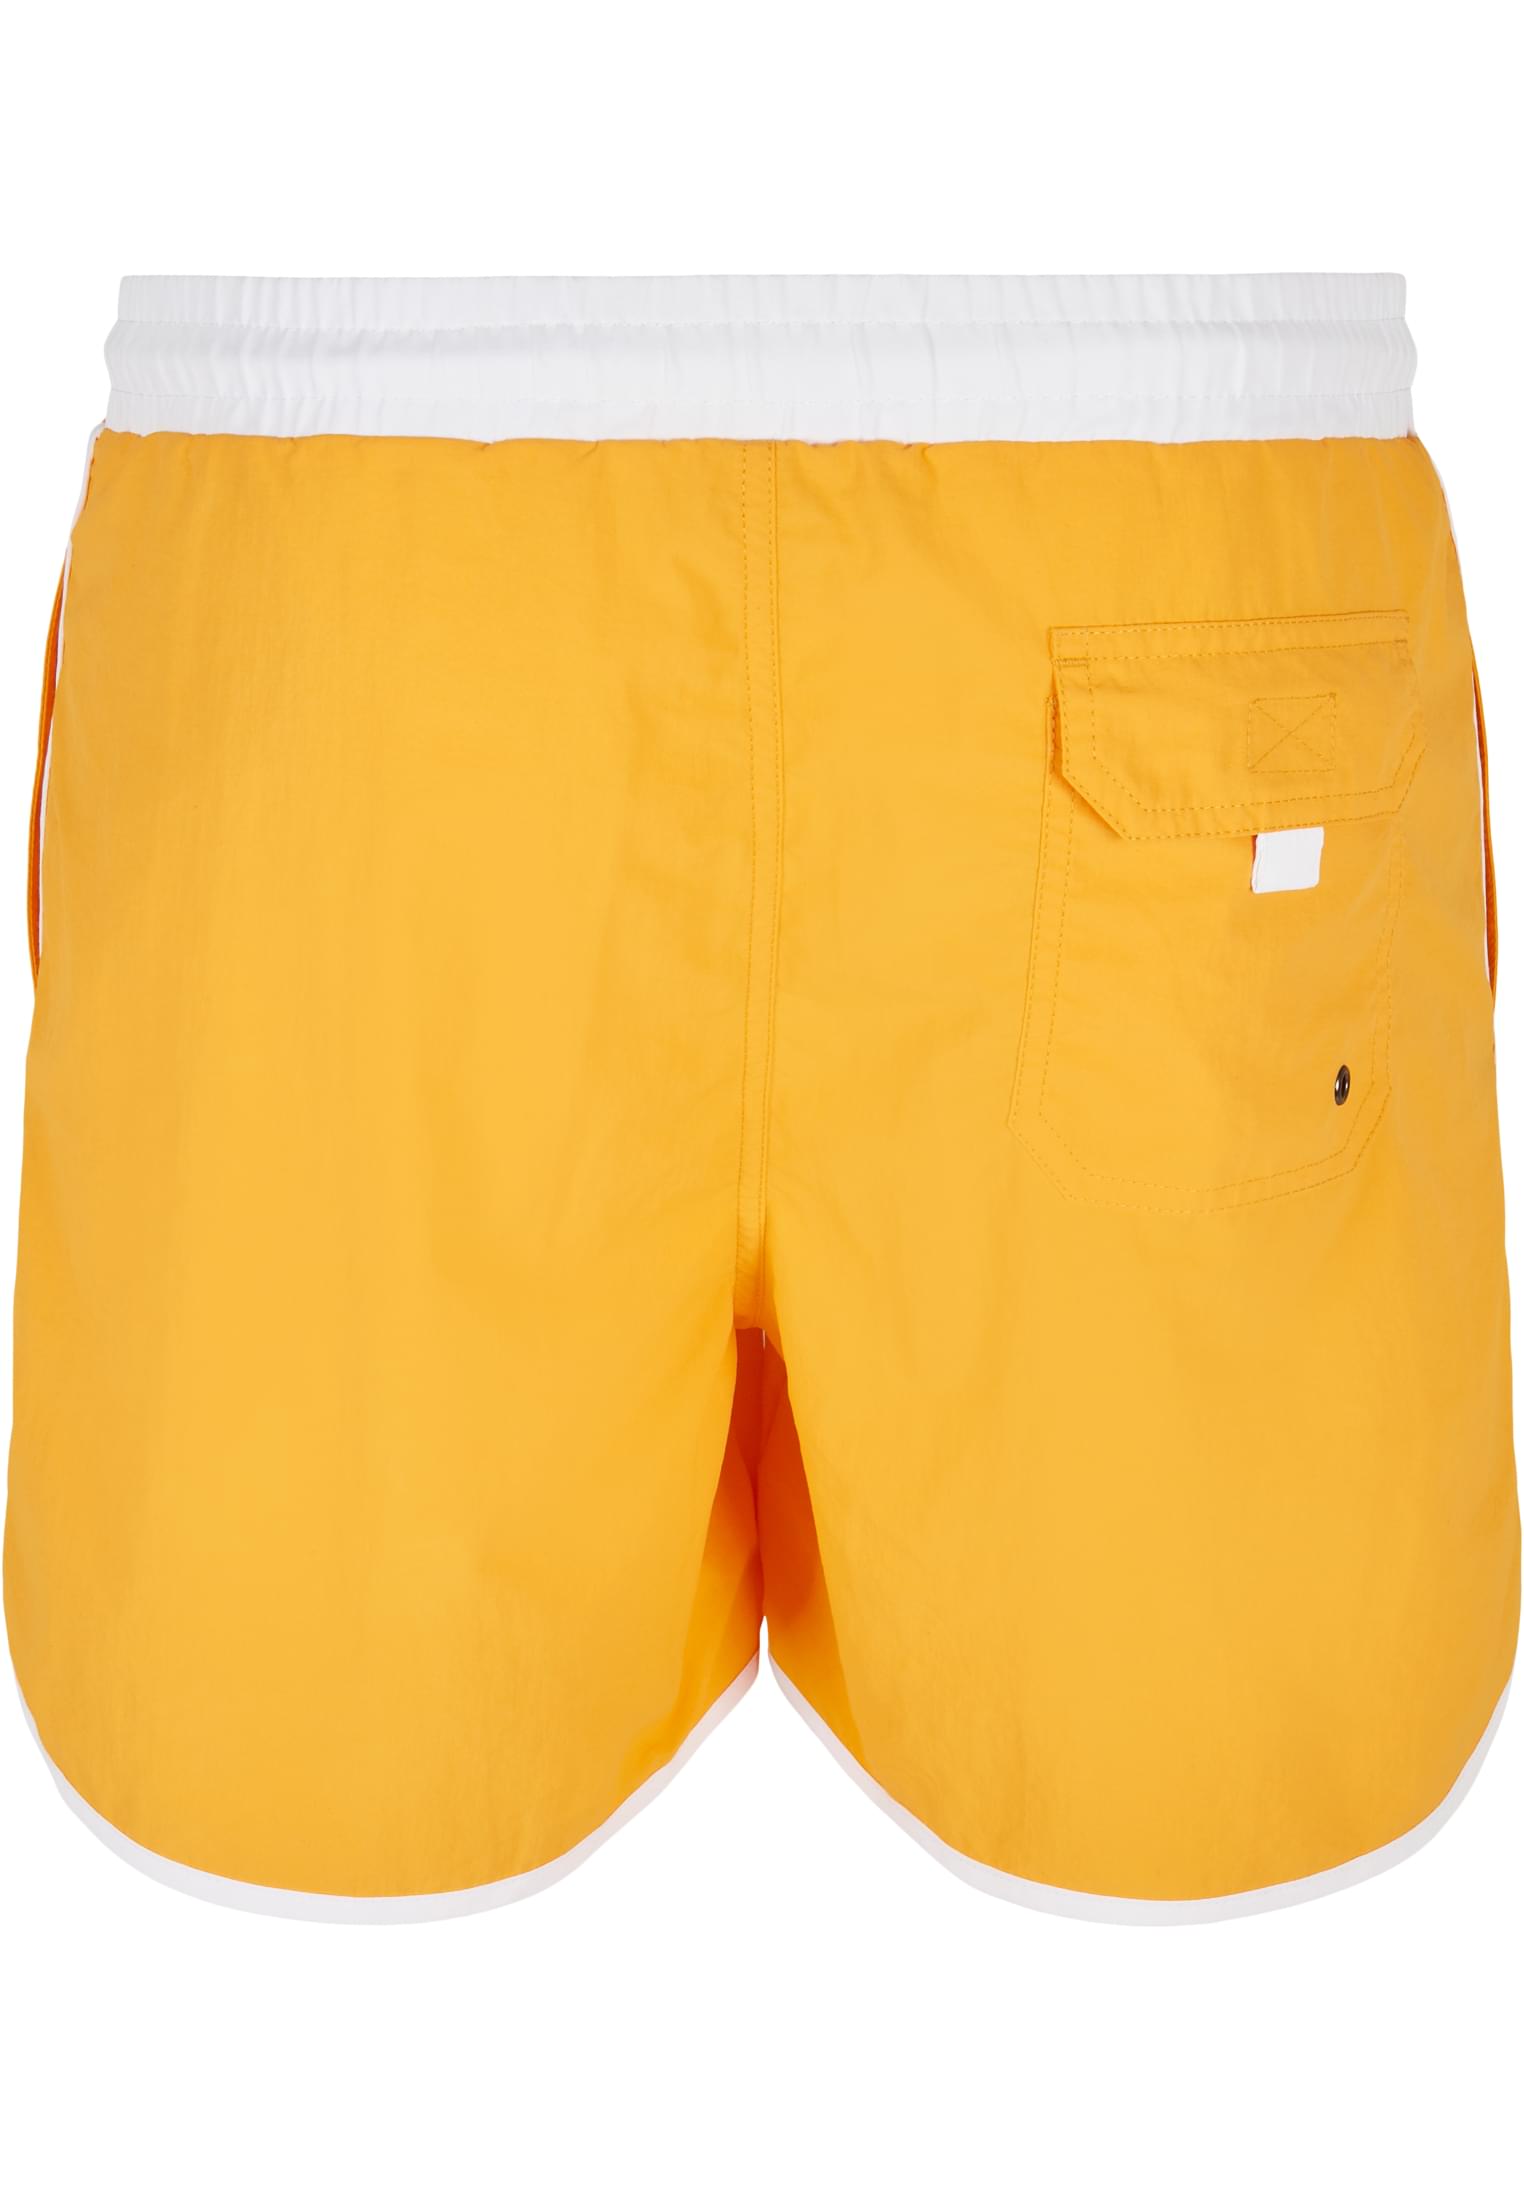 Plus Size Retro Swimshorts in Farbe white/magicmango